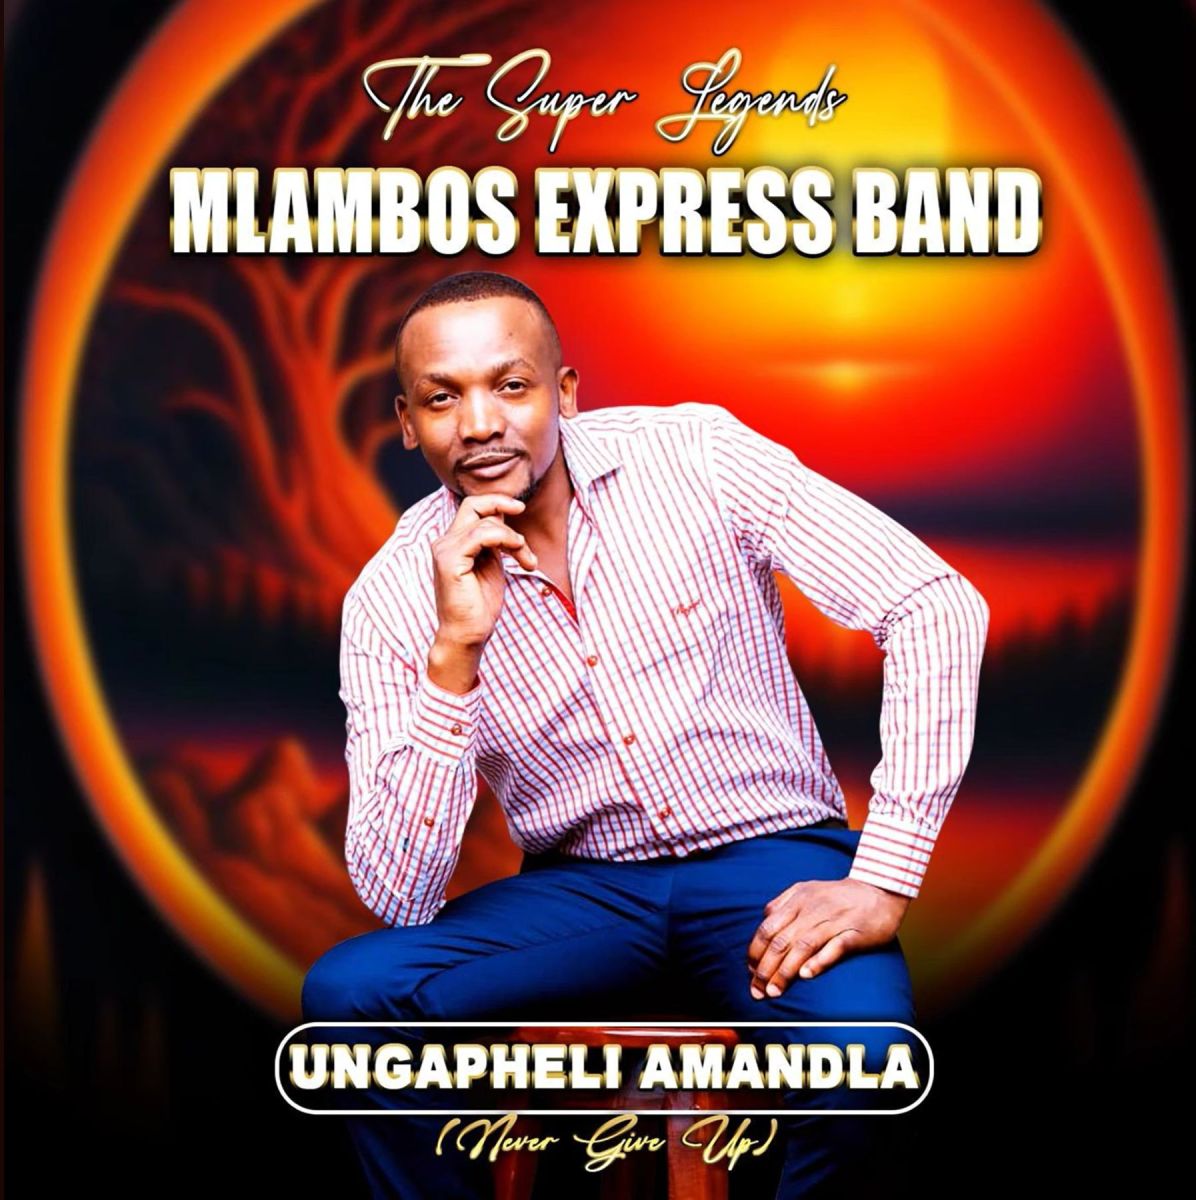 Mlambos Express Band - Ungapheli Amandla (Never Give Up) Album 9